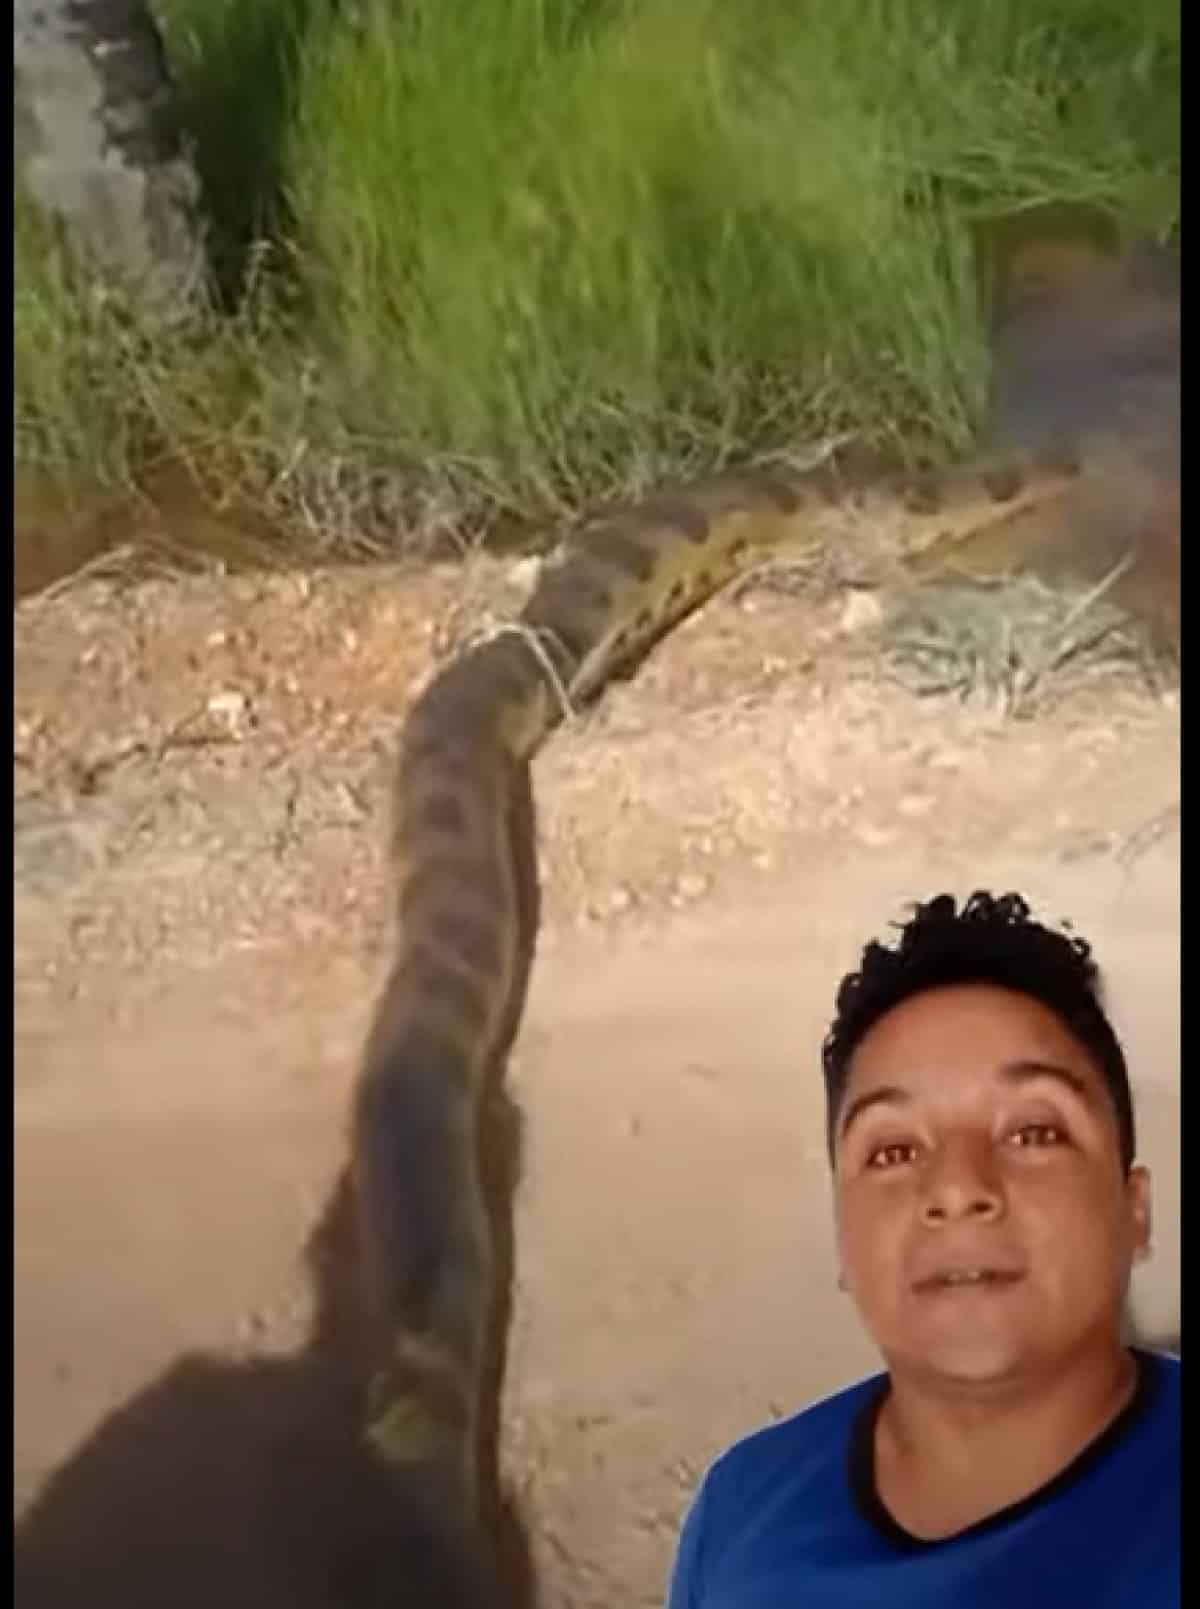 Homens encontram enorme cobra sucuri-amarela em Mato Grosso